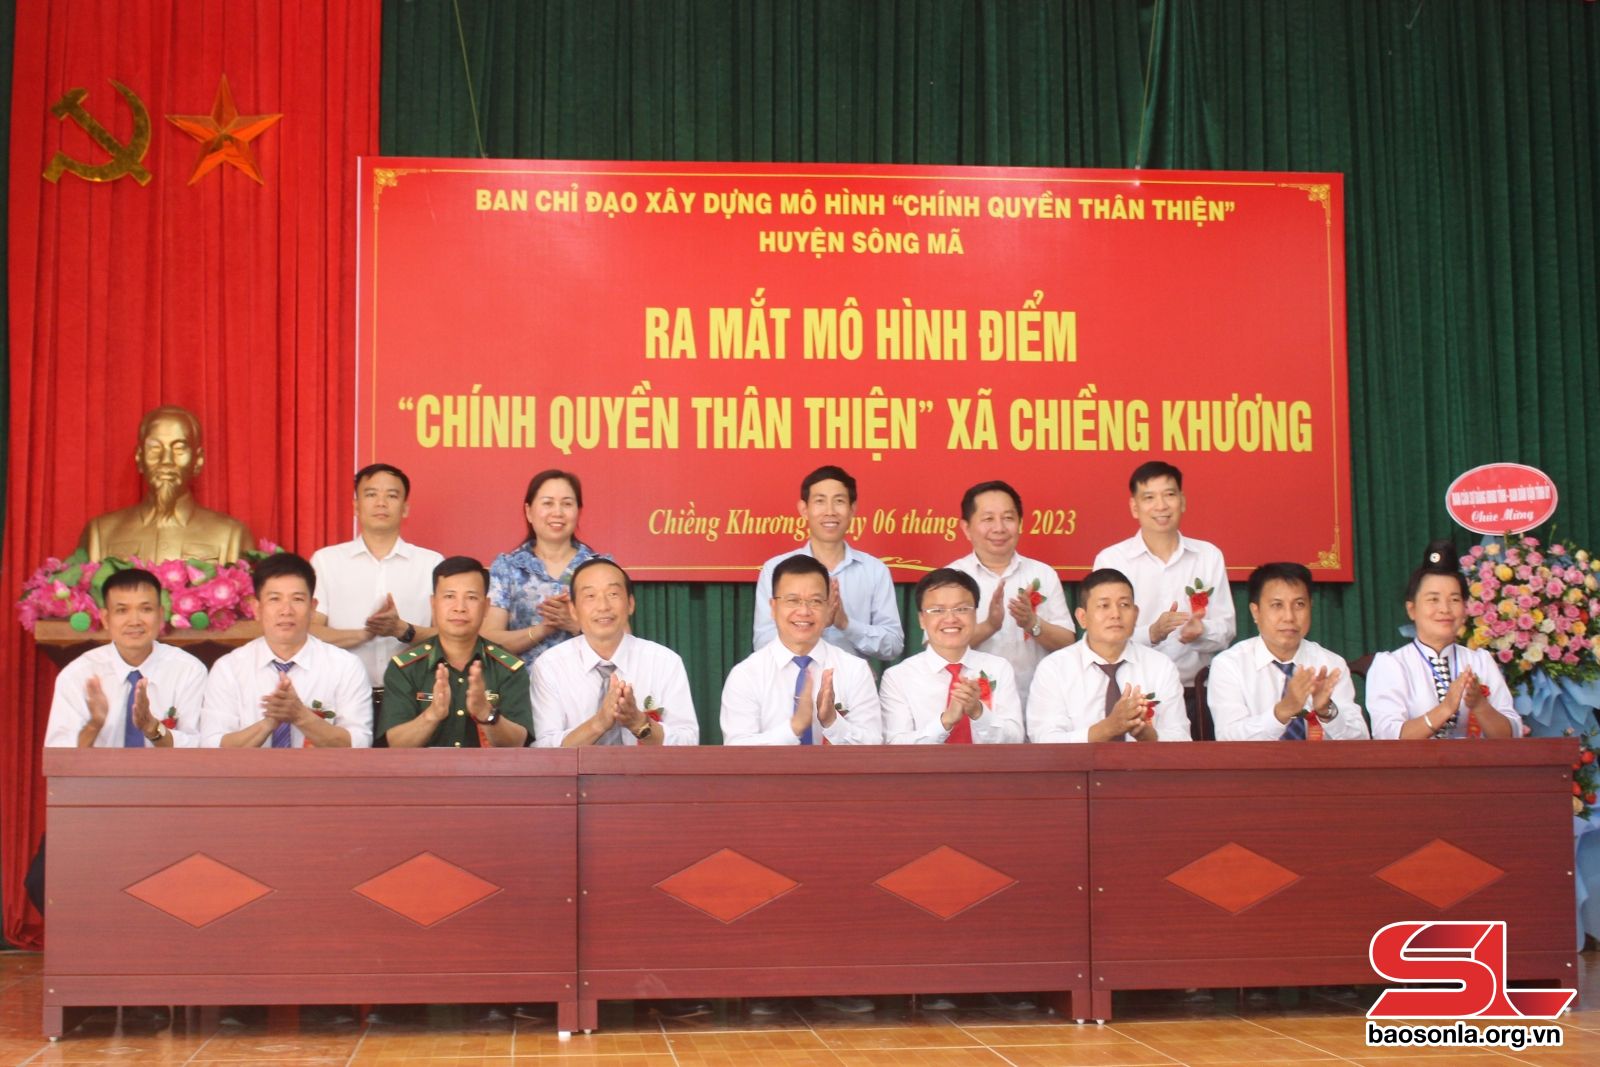 Chính quyền thân thiện vì Nhân dân phục vụ ở xã Hoằng Thái